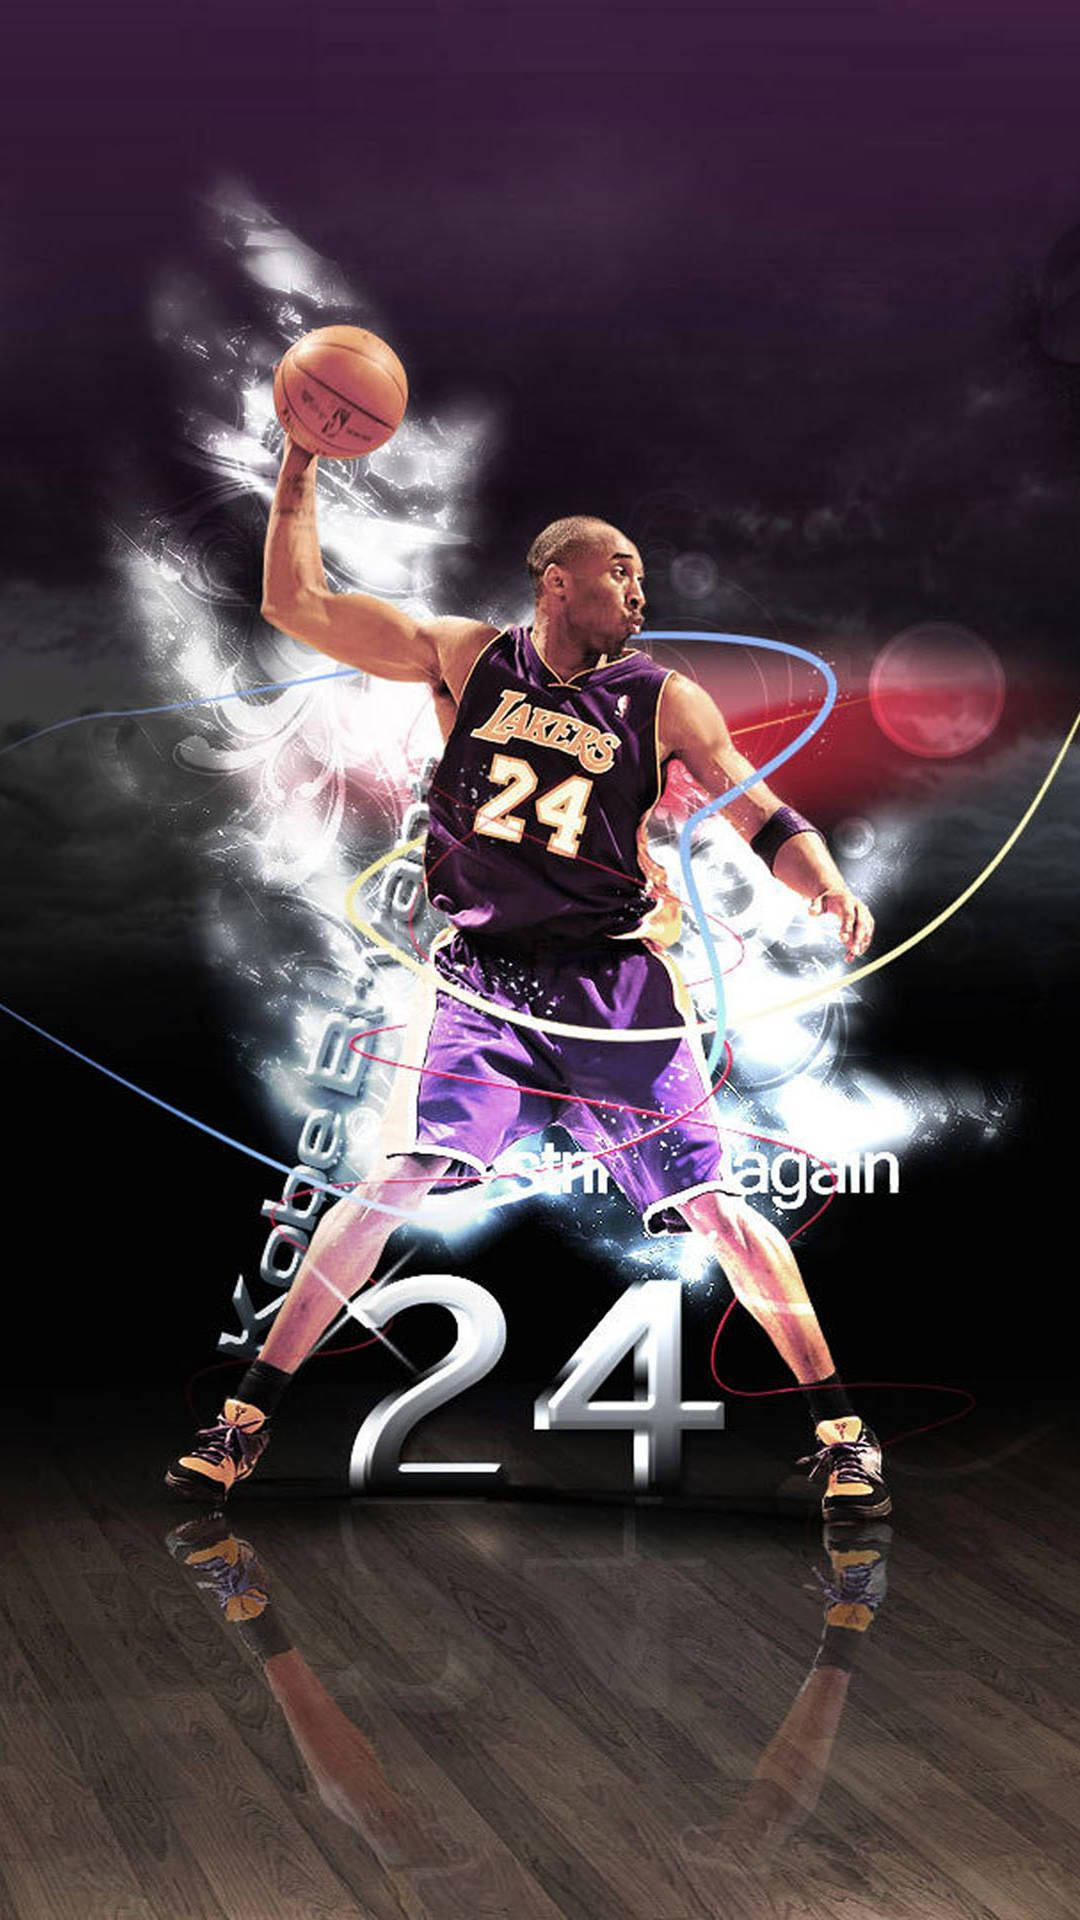 Unmomento Di Orgoglio Per Kobe Bryant - Celebrando Il Lancio Dell'iphone Di Kobe Bryant. Sfondo